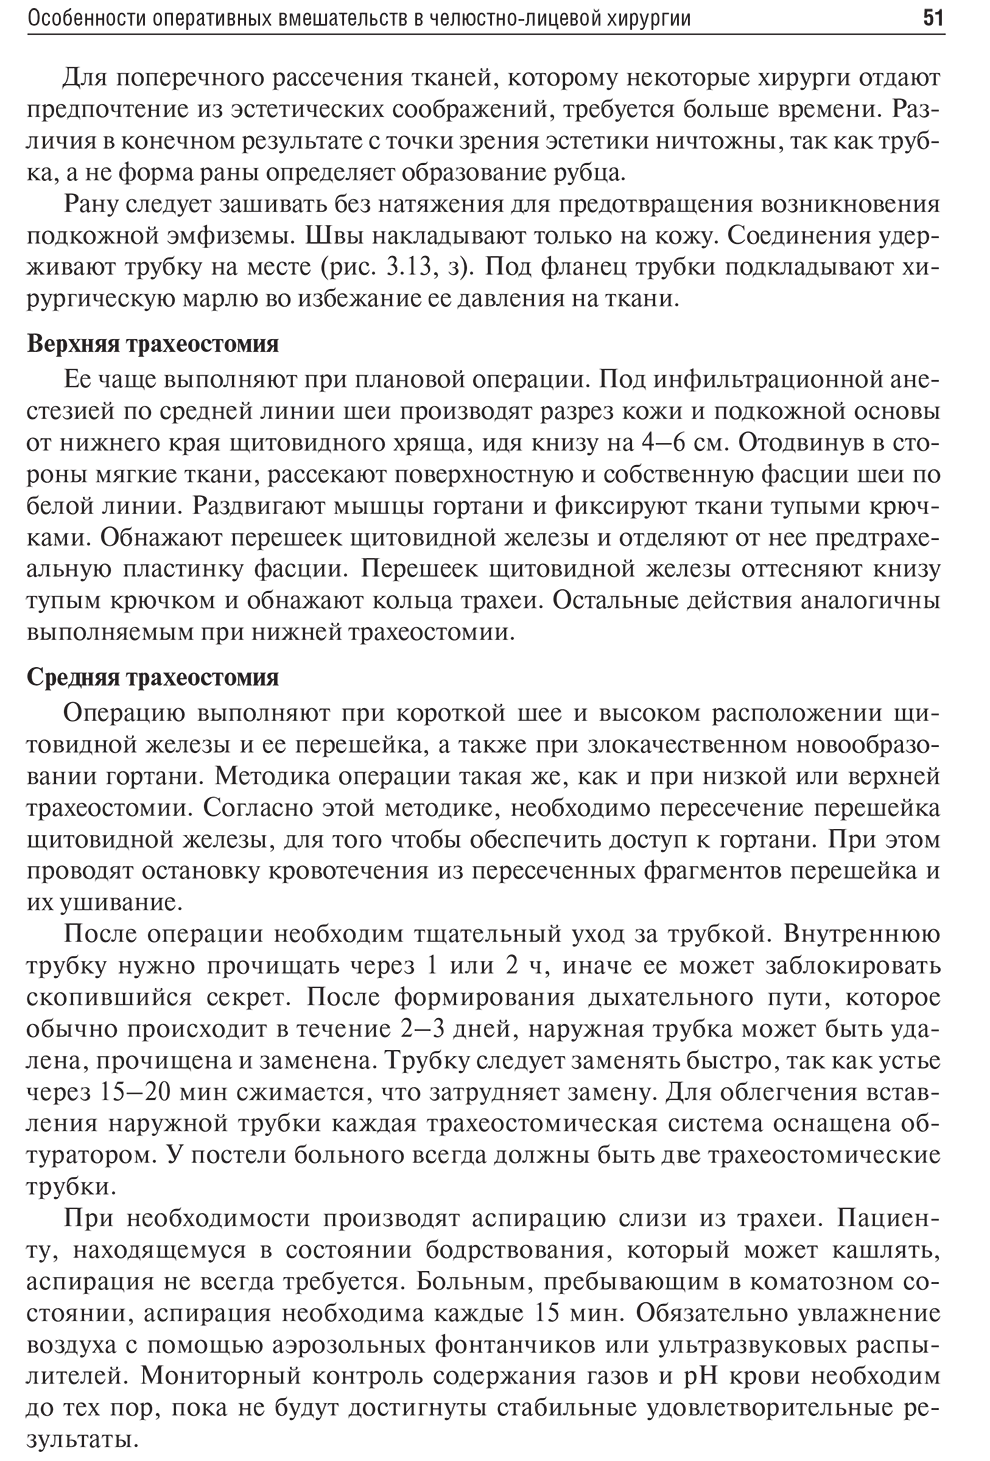 Пример страницы из книги "Челюстно-лицевая хирургия: учебник" - Дробышев А. Ю.